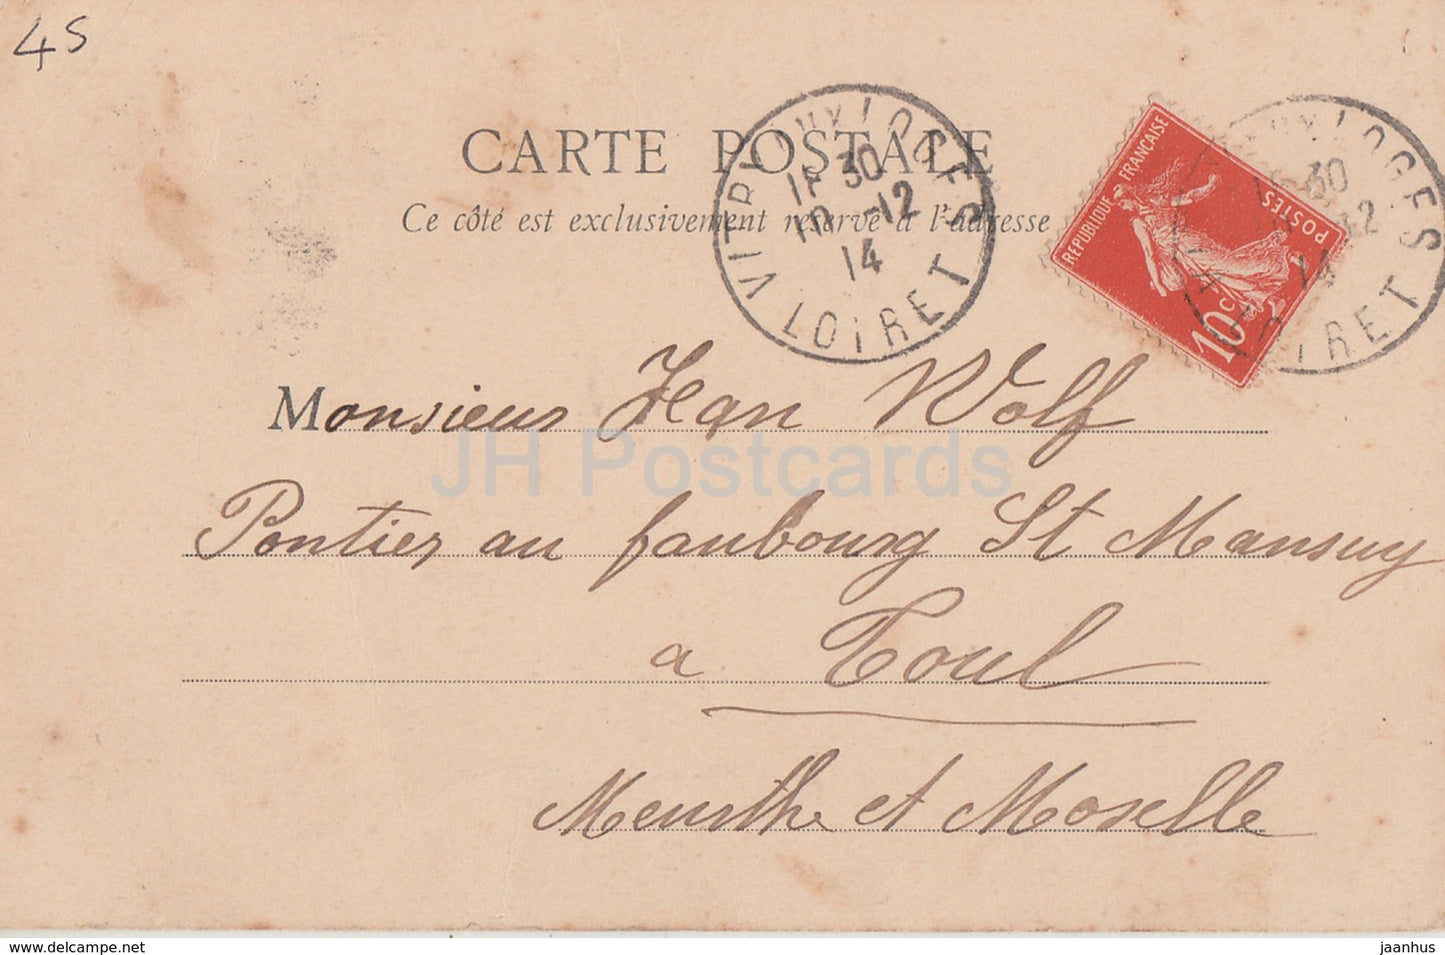 Vitry Aux Loges - Chateau de La Motte - castle - 7 - old postcard - 1914 - France - used